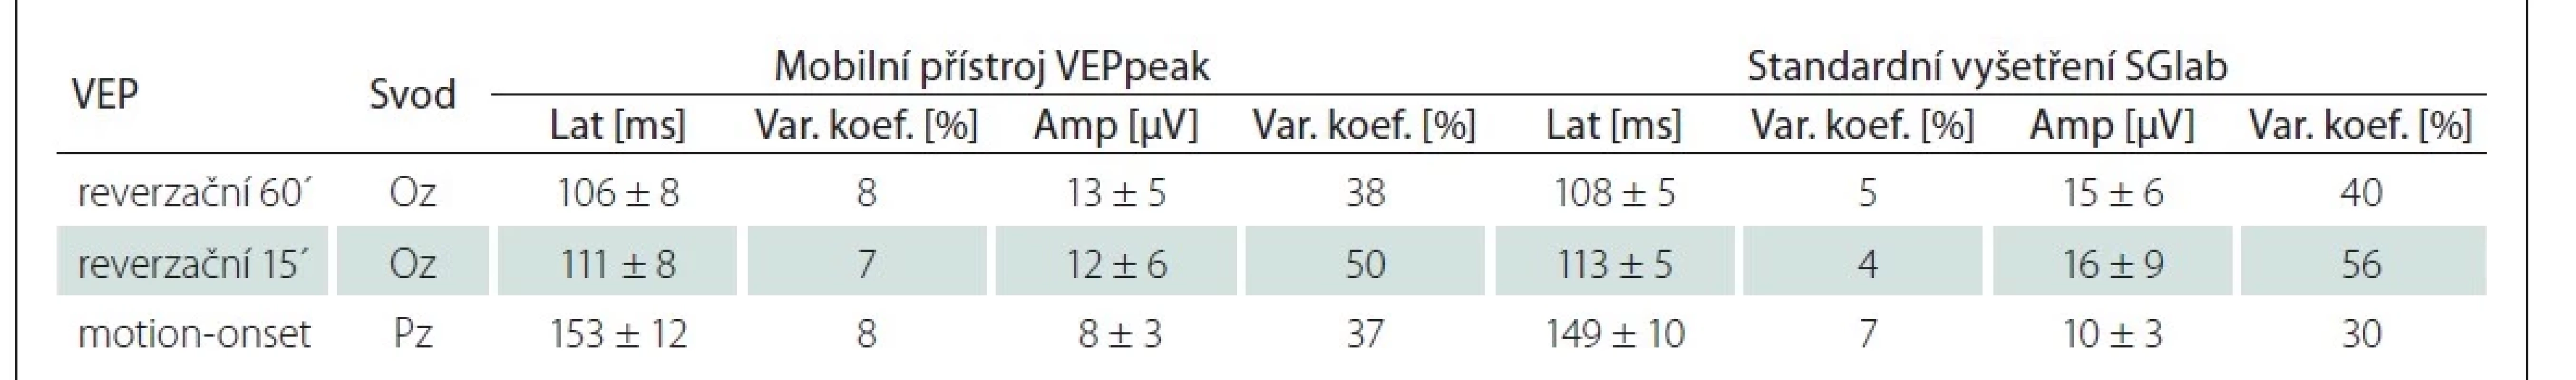 Parametry VEP z mobilního přístroje VEPpeak a standardního vyšetření (SGlab) u kontrolních osob (n = 15). Jsou specifikovány
parametry dominantních vrcholů – P100 u reverzačních a N2 u motion-onset VEP.